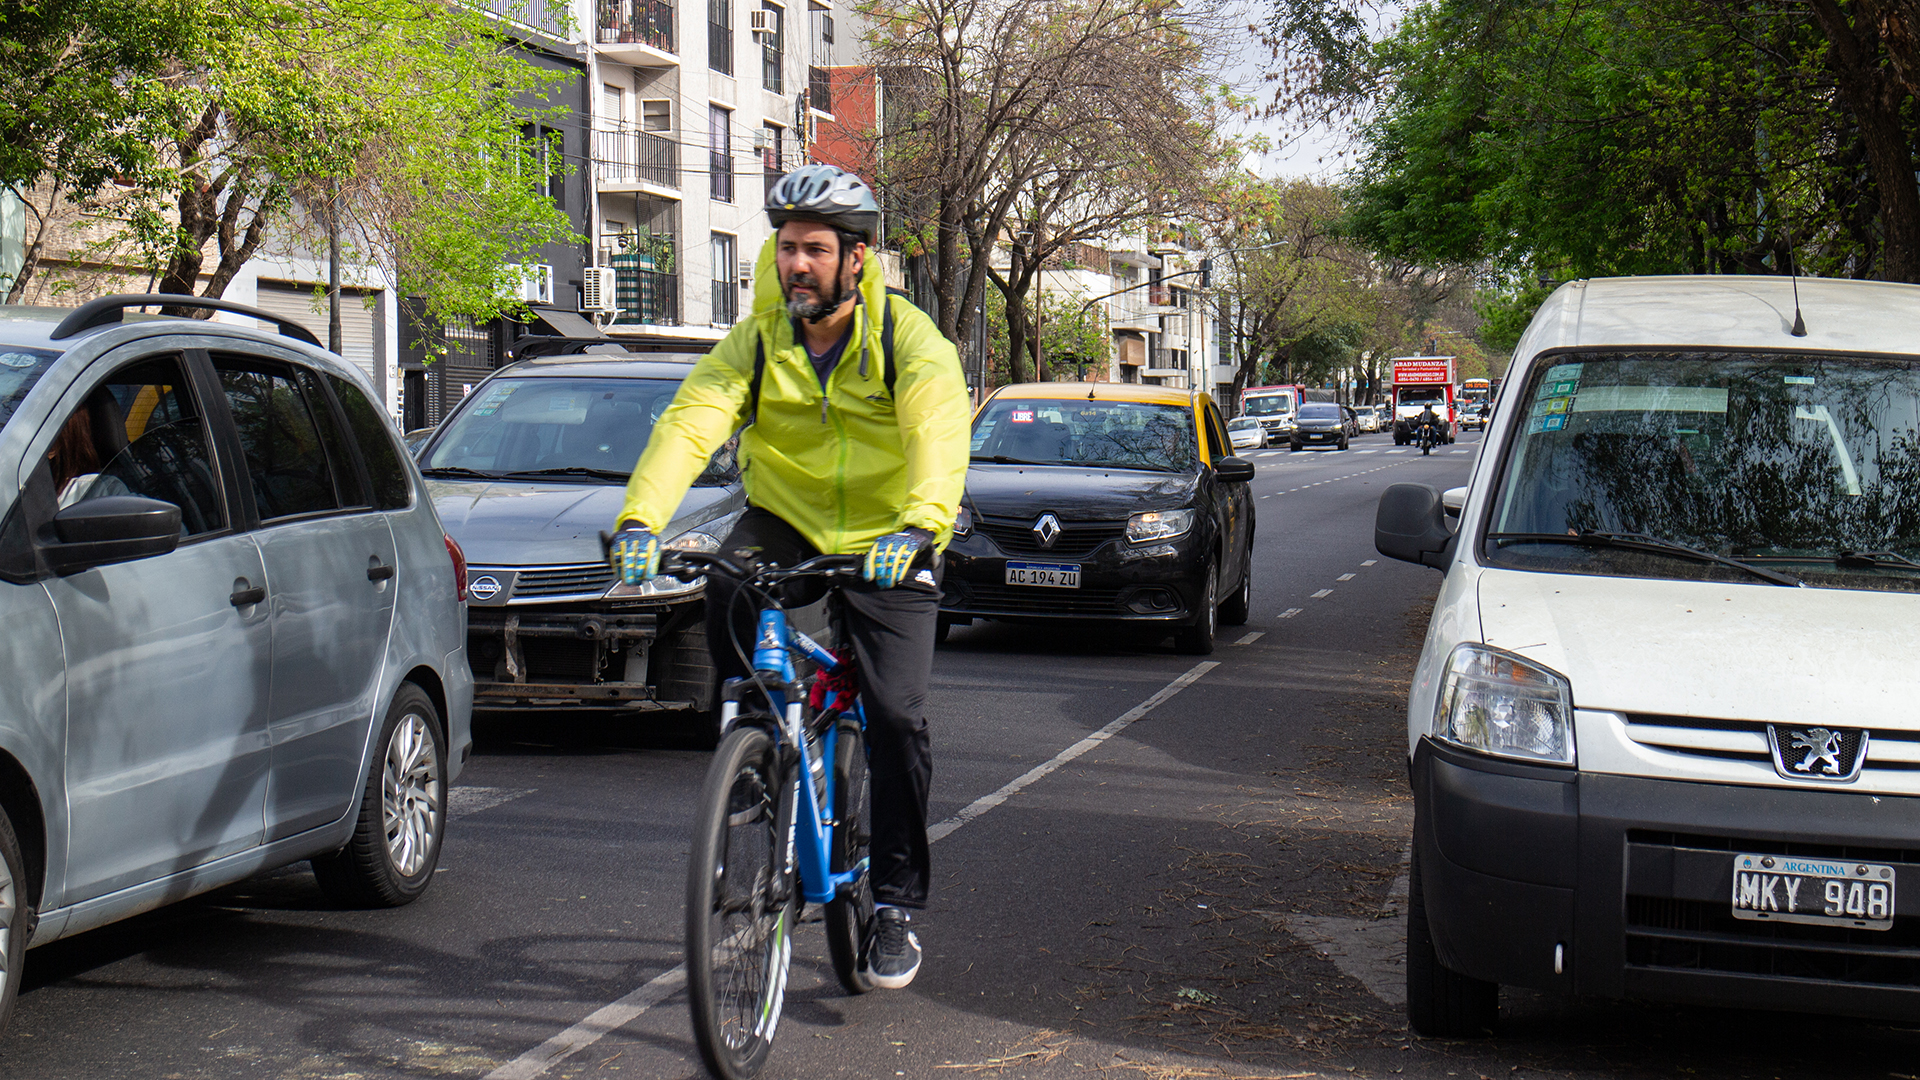 Andar en bicicleta en una ciudad exige un compromiso de todos, pero los ciclistas también deben respetar las normas de los automóviles, cosa que no siempre ocurre